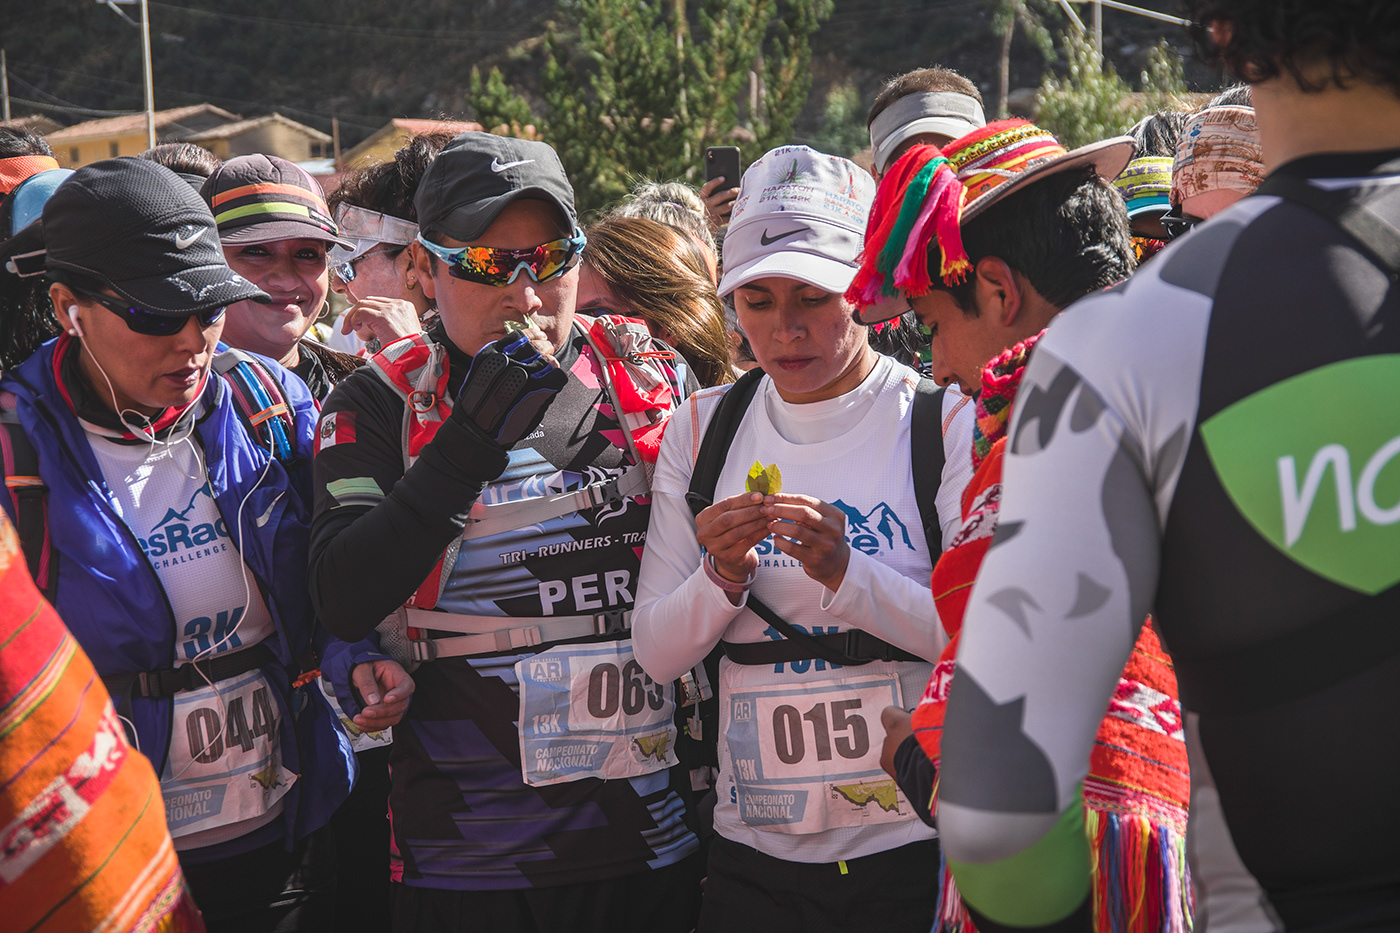 cusco deporte gps location Marathon peru race